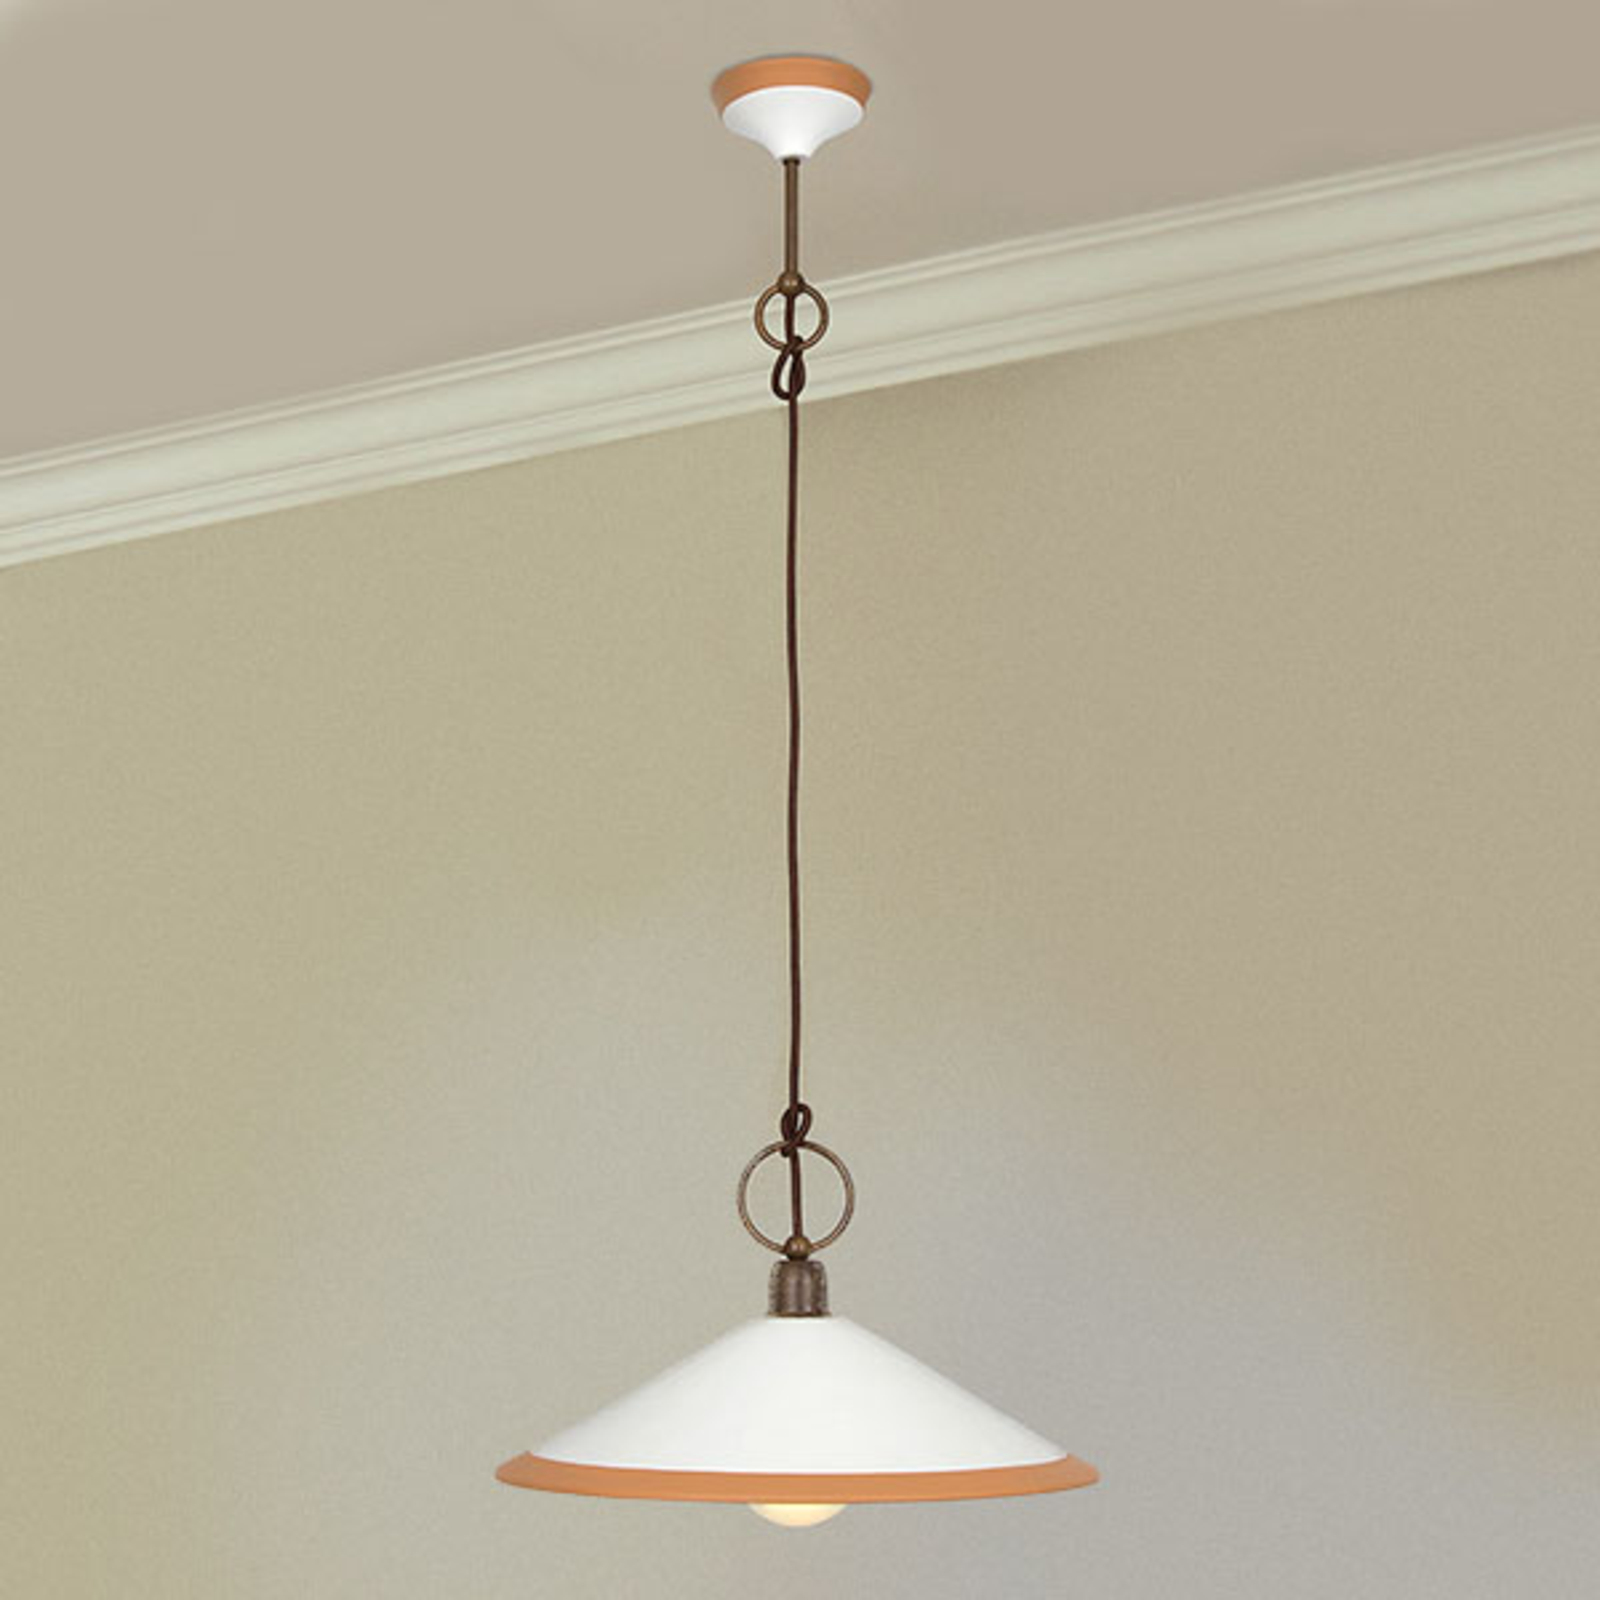 Hængelampe 4560/S41, brun, hvid, okker